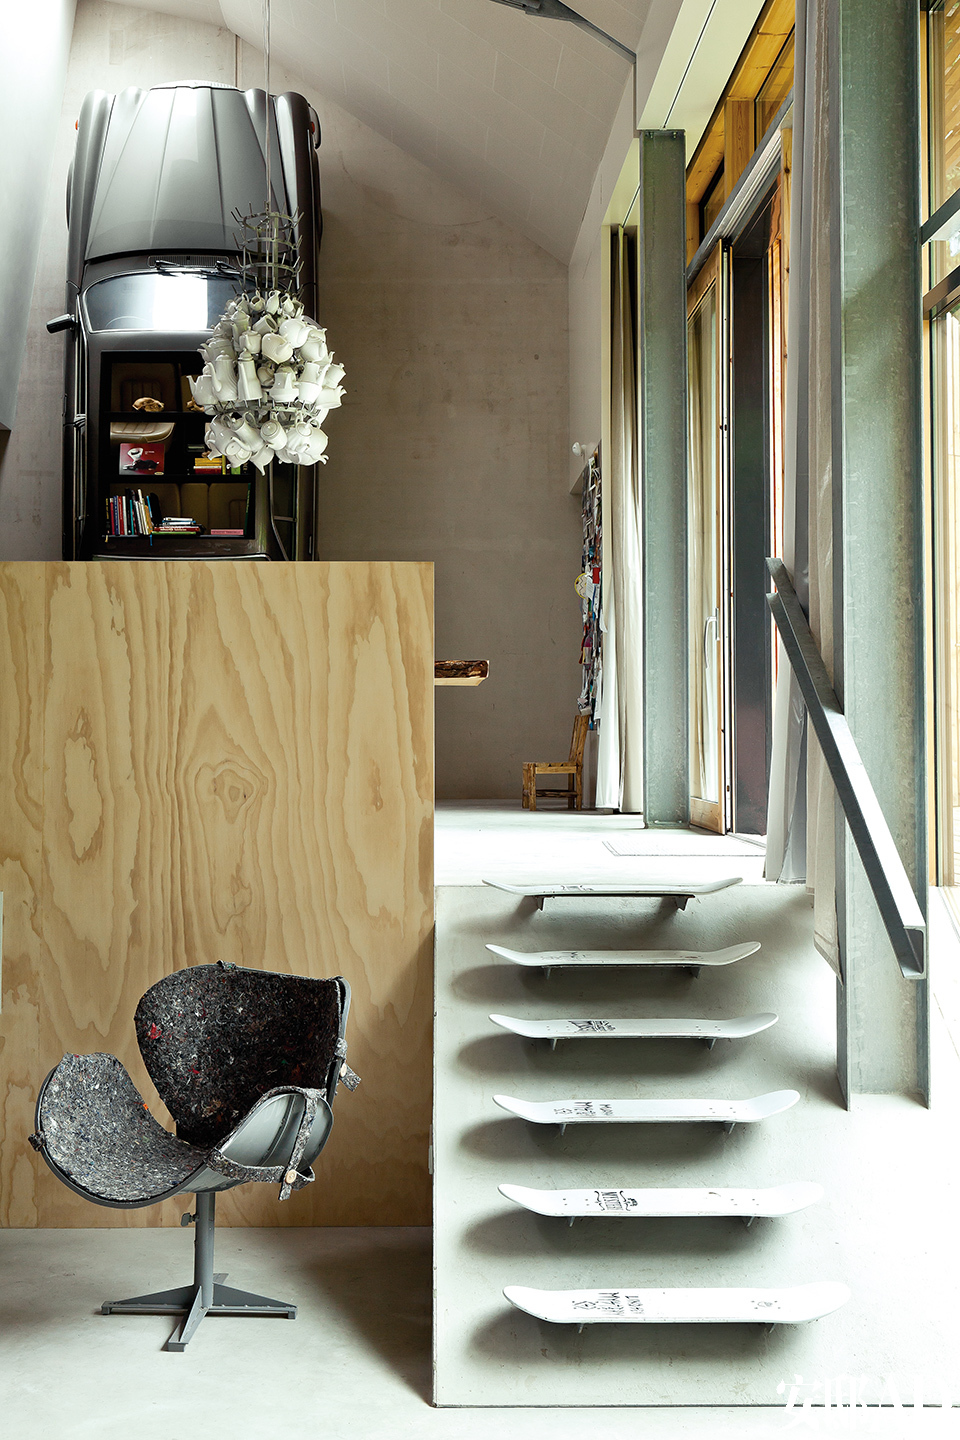 粗犷的水泥和钢铁梁柱也是室内设计的一部分，溜冰板被涂成灰色，变成了楼梯的台阶。